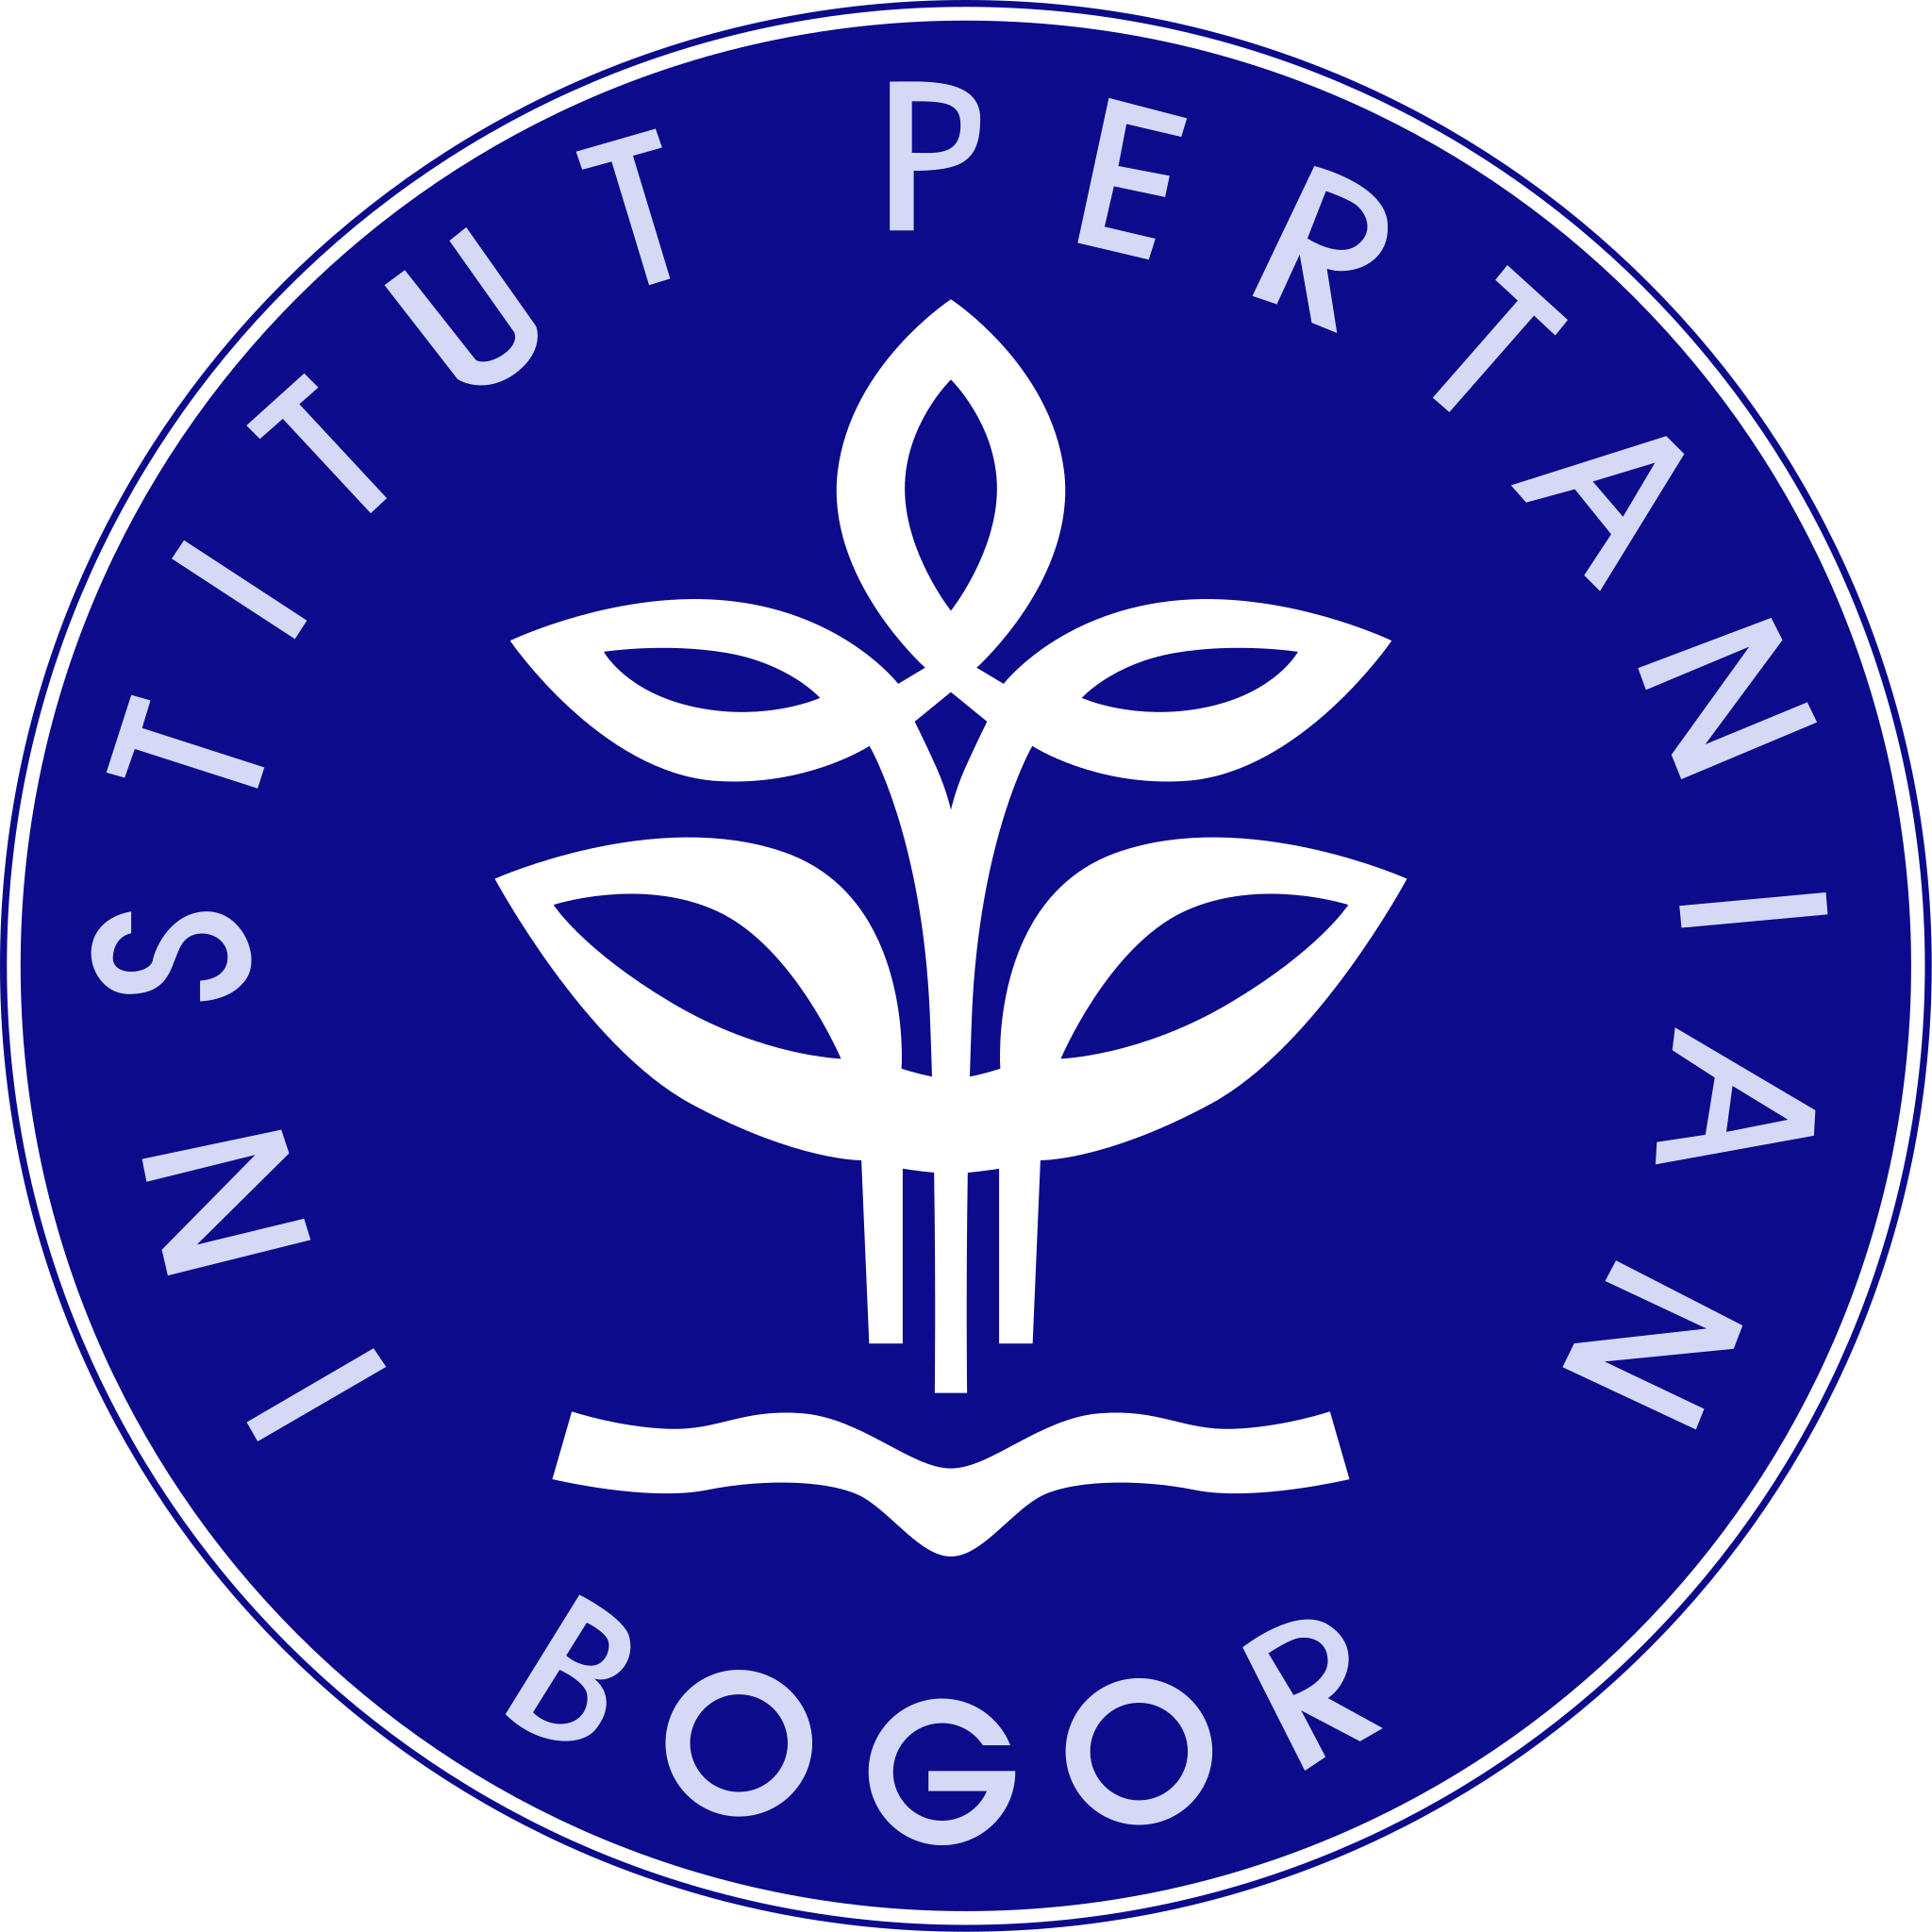 IPB logo